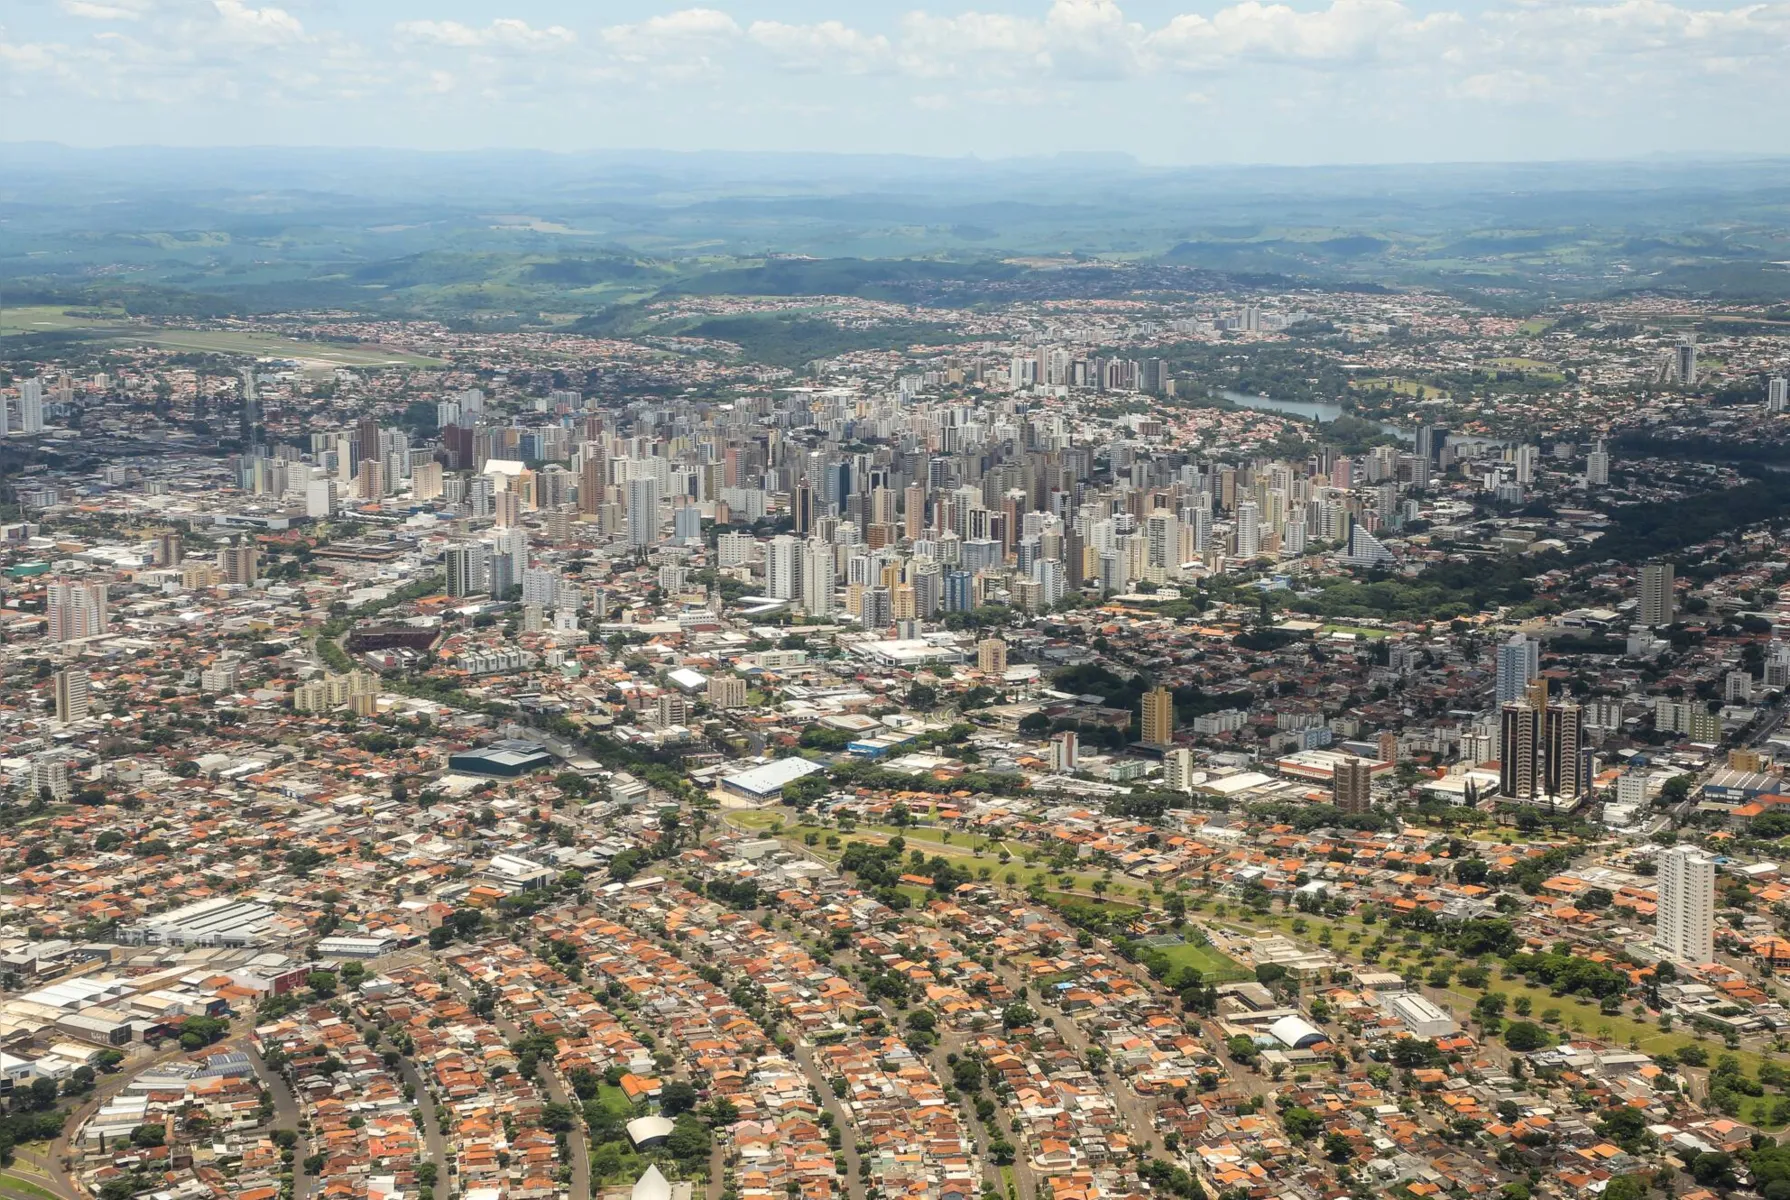 vista aerea da cidade de londrina feitas no dia da comemoracao aos 79 anos do aeroclube de londrina. foto roberto custodio - folha de londrina - 26/01/2020